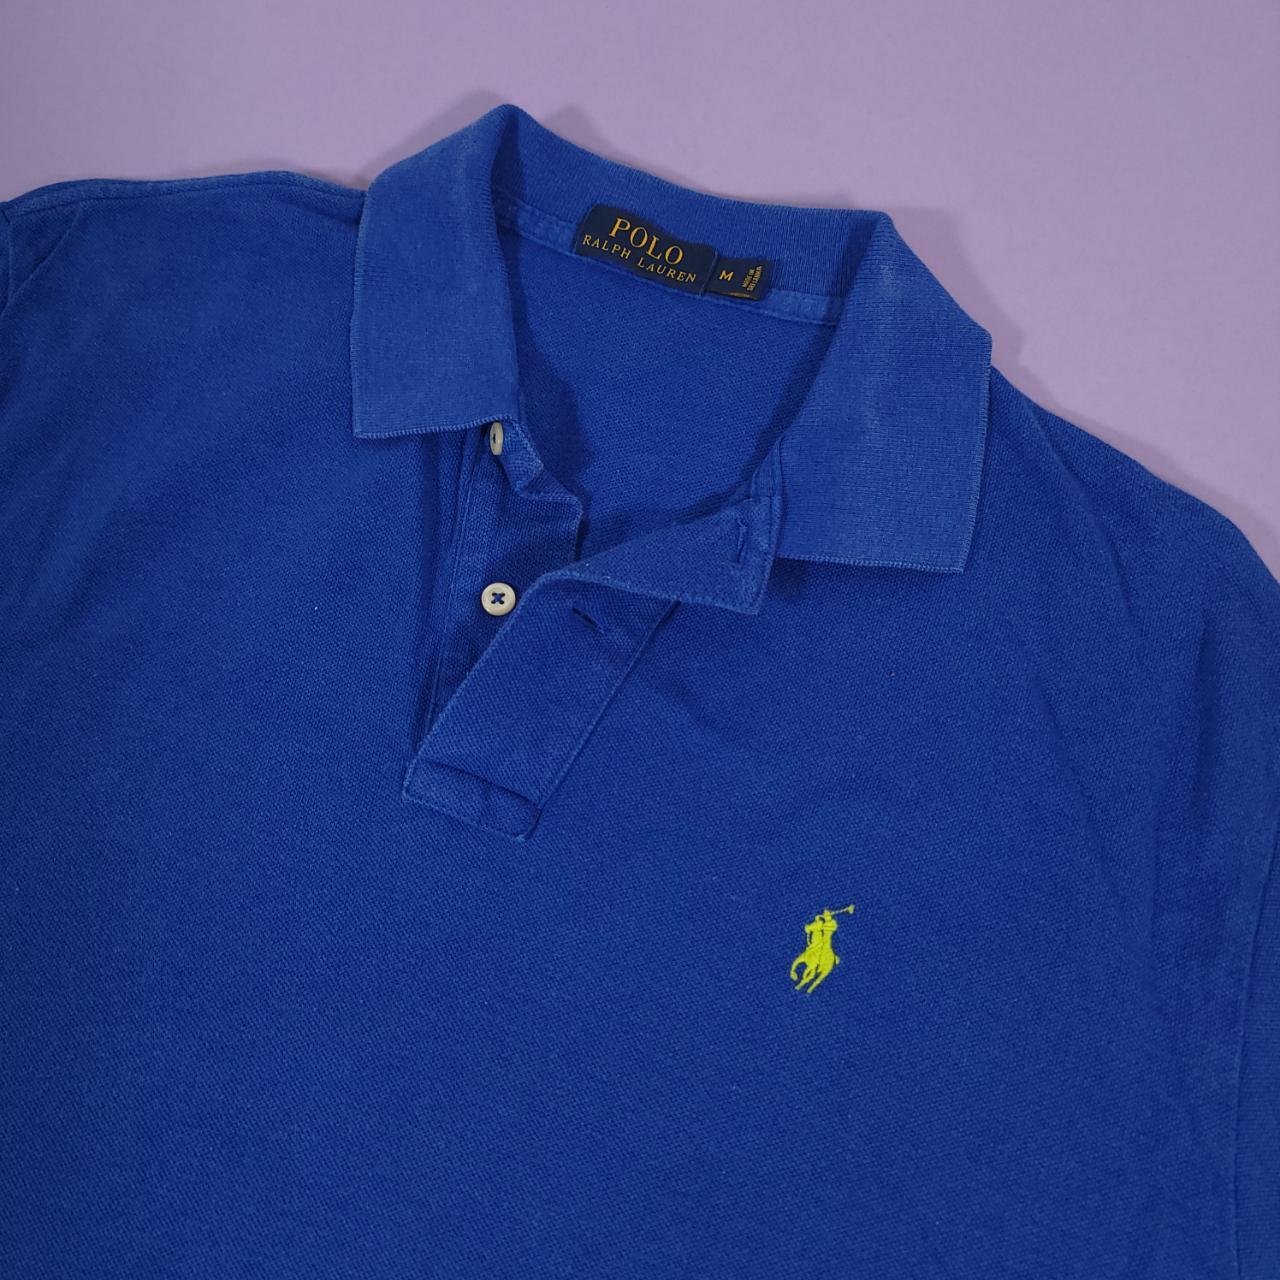 Vintage Y2K Polo Ralph Lauren Blue Polo Shirt Men's... - Depop